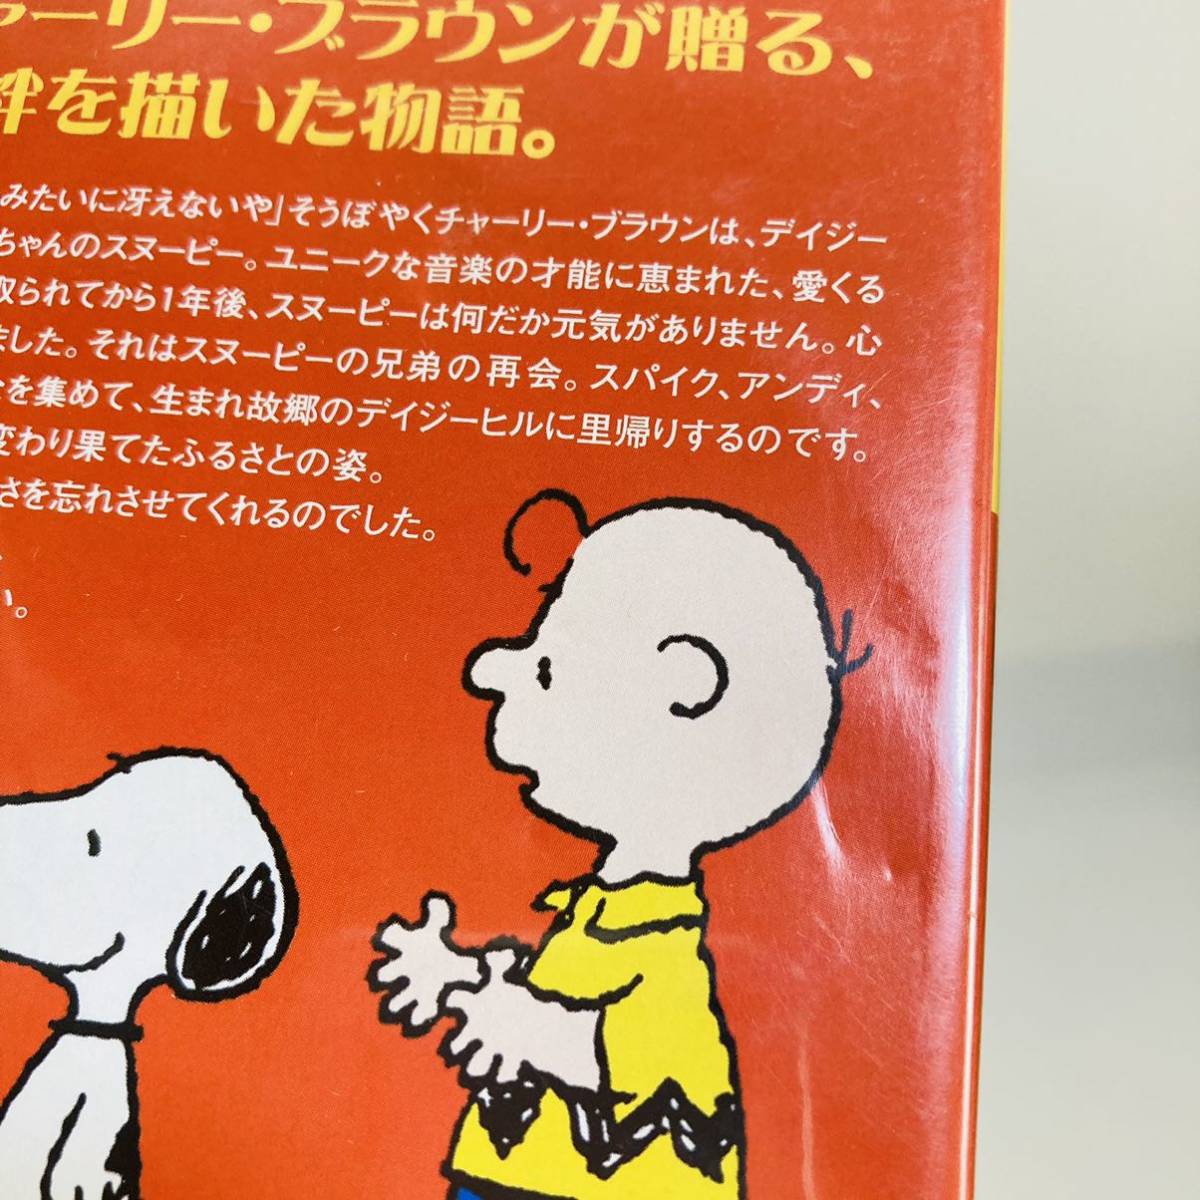 Paypayフリマ 212 送料無料 スヌーピー誕生 Dvd アニメ チャーリーブラウン Snoopy スヌーピー